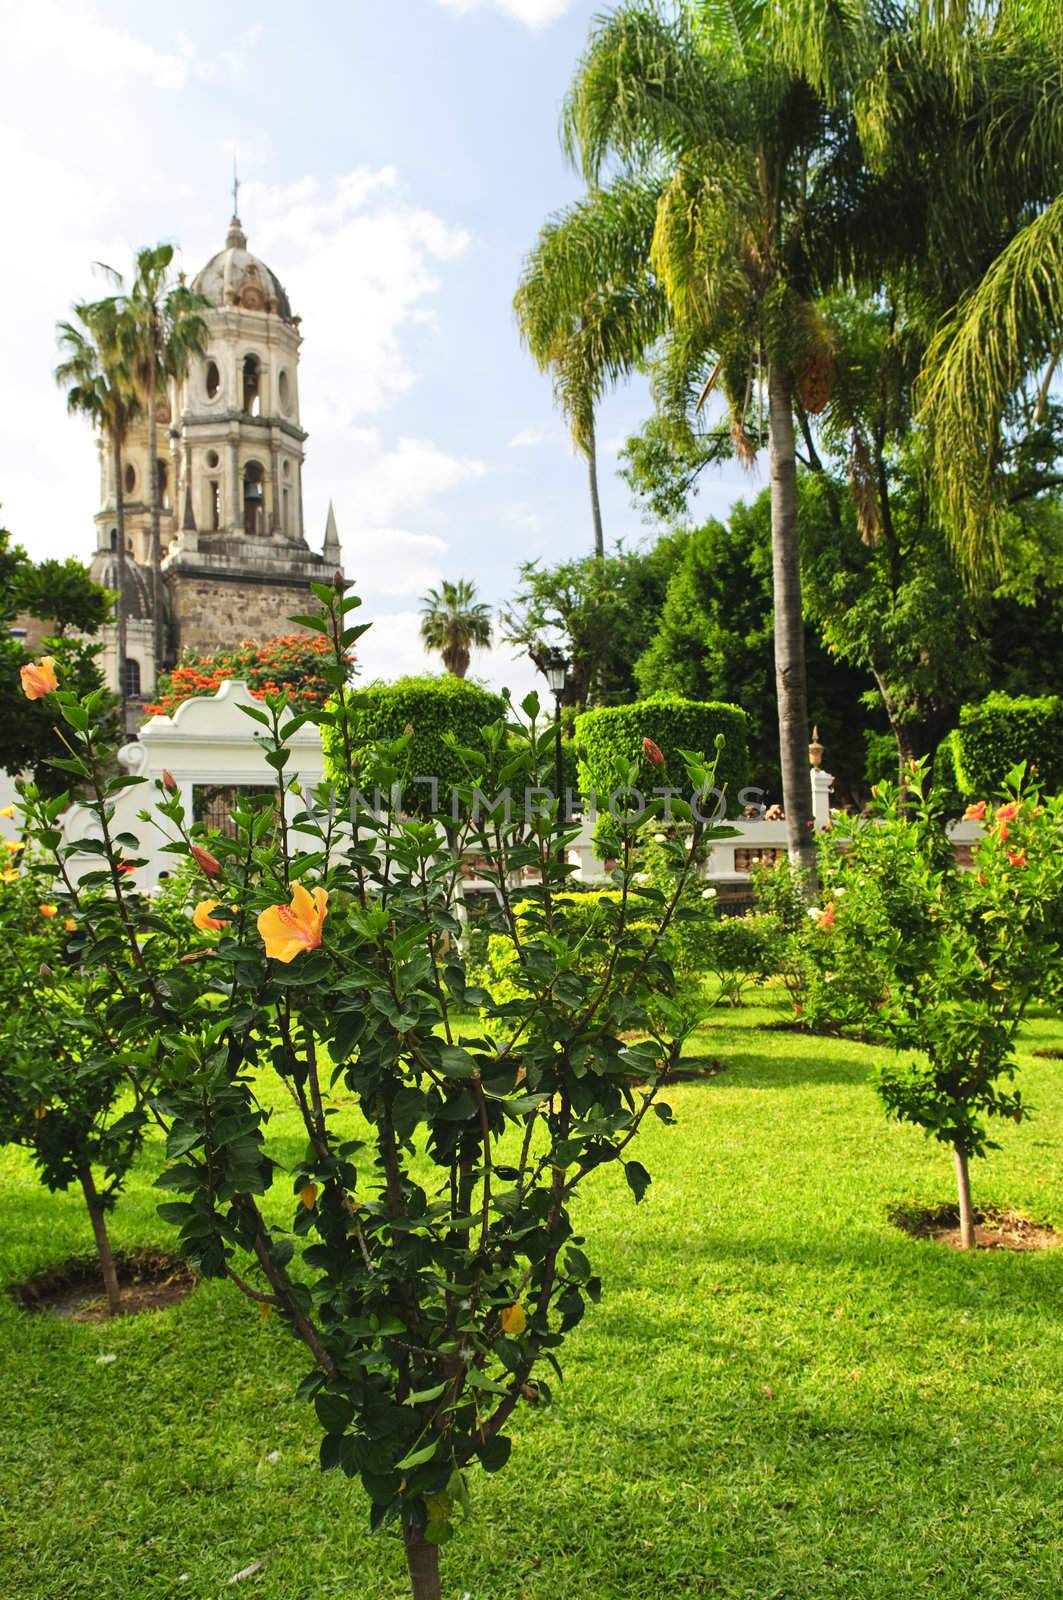 Templo de la Soledad, Guadalajara Jalisco, Mexico by elenathewise